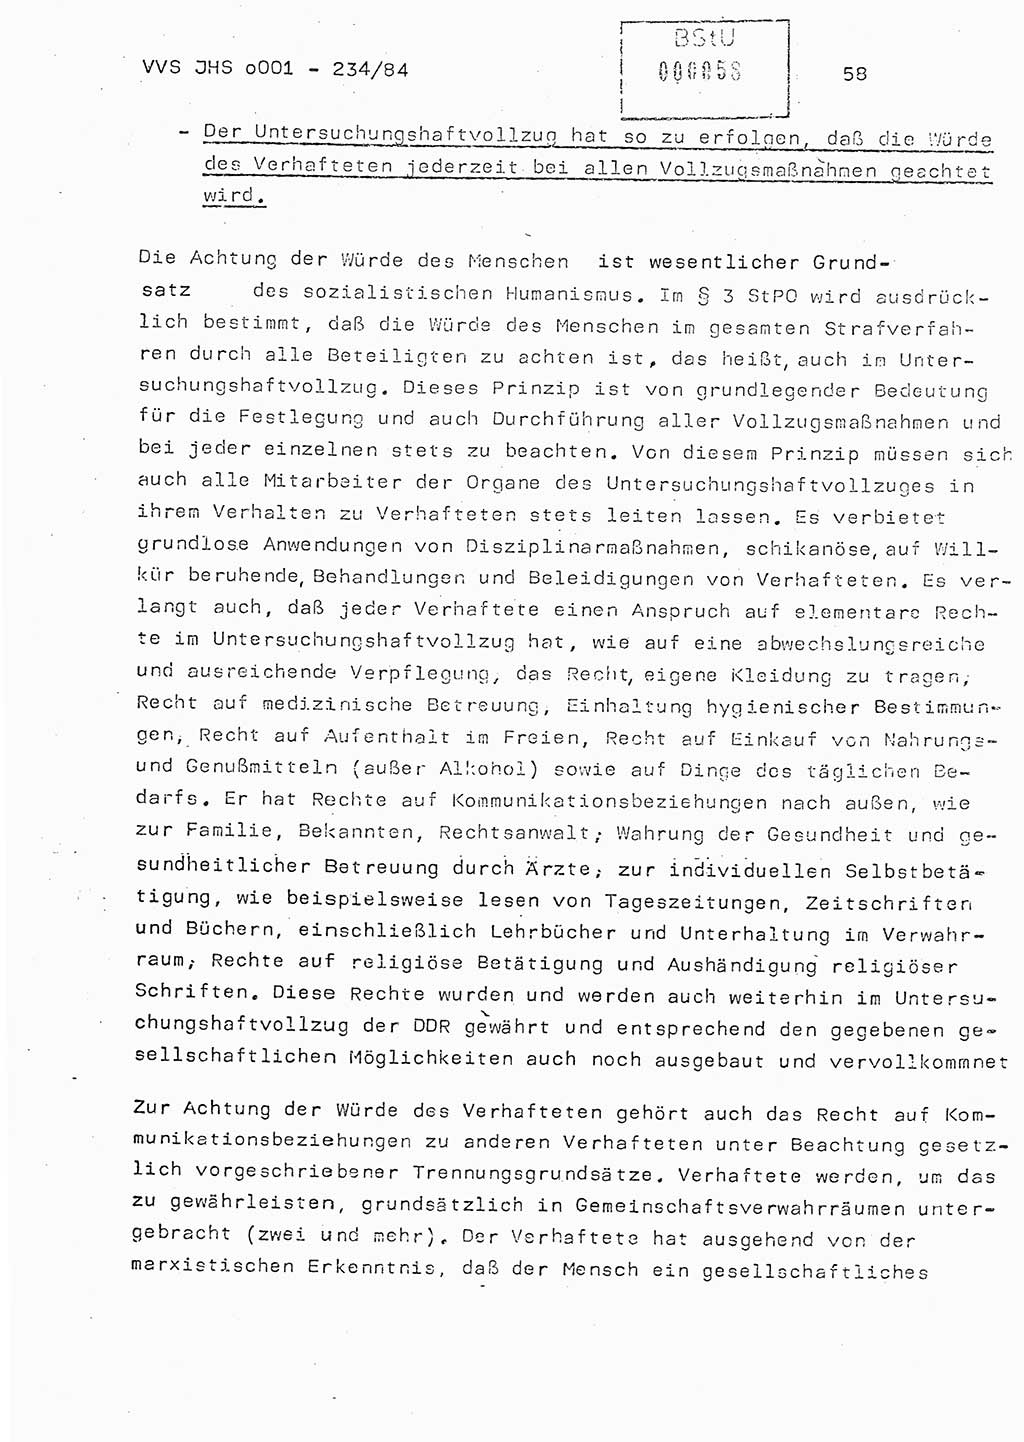 Dissertation Oberst Siegfried Rataizick (Abt. ⅩⅣ), Oberstleutnant Volkmar Heinz (Abt. ⅩⅣ), Oberstleutnant Werner Stein (HA Ⅸ), Hauptmann Heinz Conrad (JHS), Ministerium für Staatssicherheit (MfS) [Deutsche Demokratische Republik (DDR)], Juristische Hochschule (JHS), Vertrauliche Verschlußsache (VVS) o001-234/84, Potsdam 1984, Seite 58 (Diss. MfS DDR JHS VVS o001-234/84 1984, S. 58)